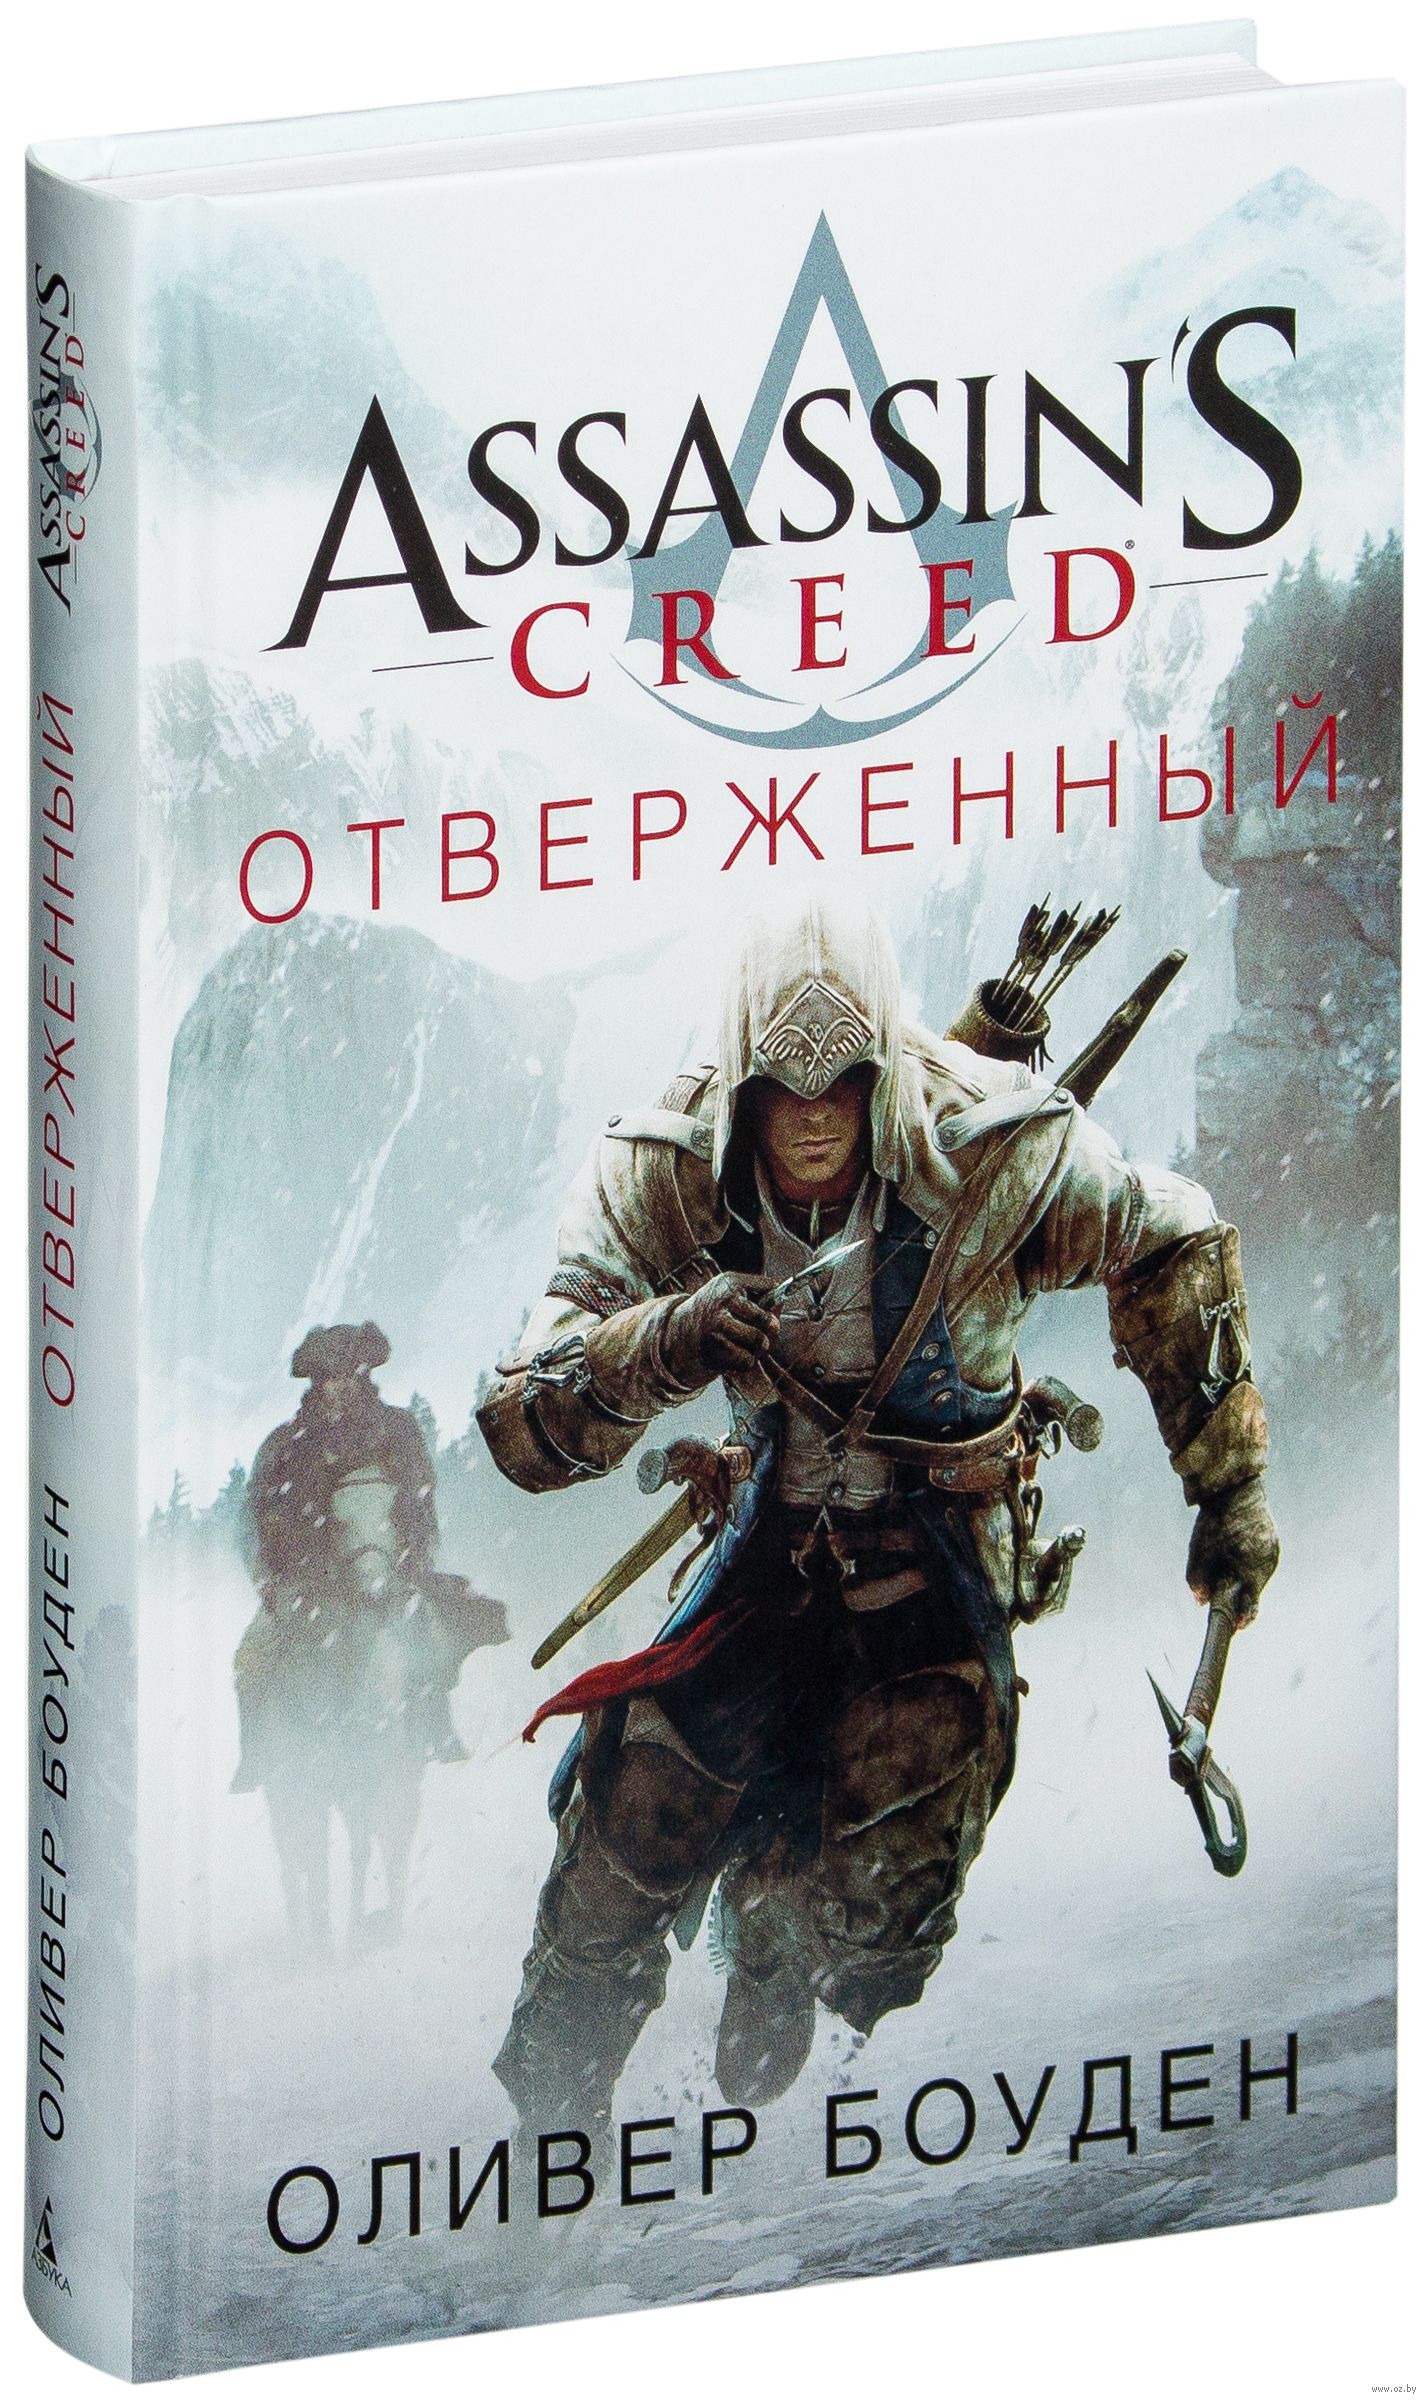 Отверженный 7 читать. Оливер Боуден отверженный. Книга ассасин Крид отверженный. Ассасин Оливер Боуден. Боуден Оливер «Assassin's Creed: отверженный».